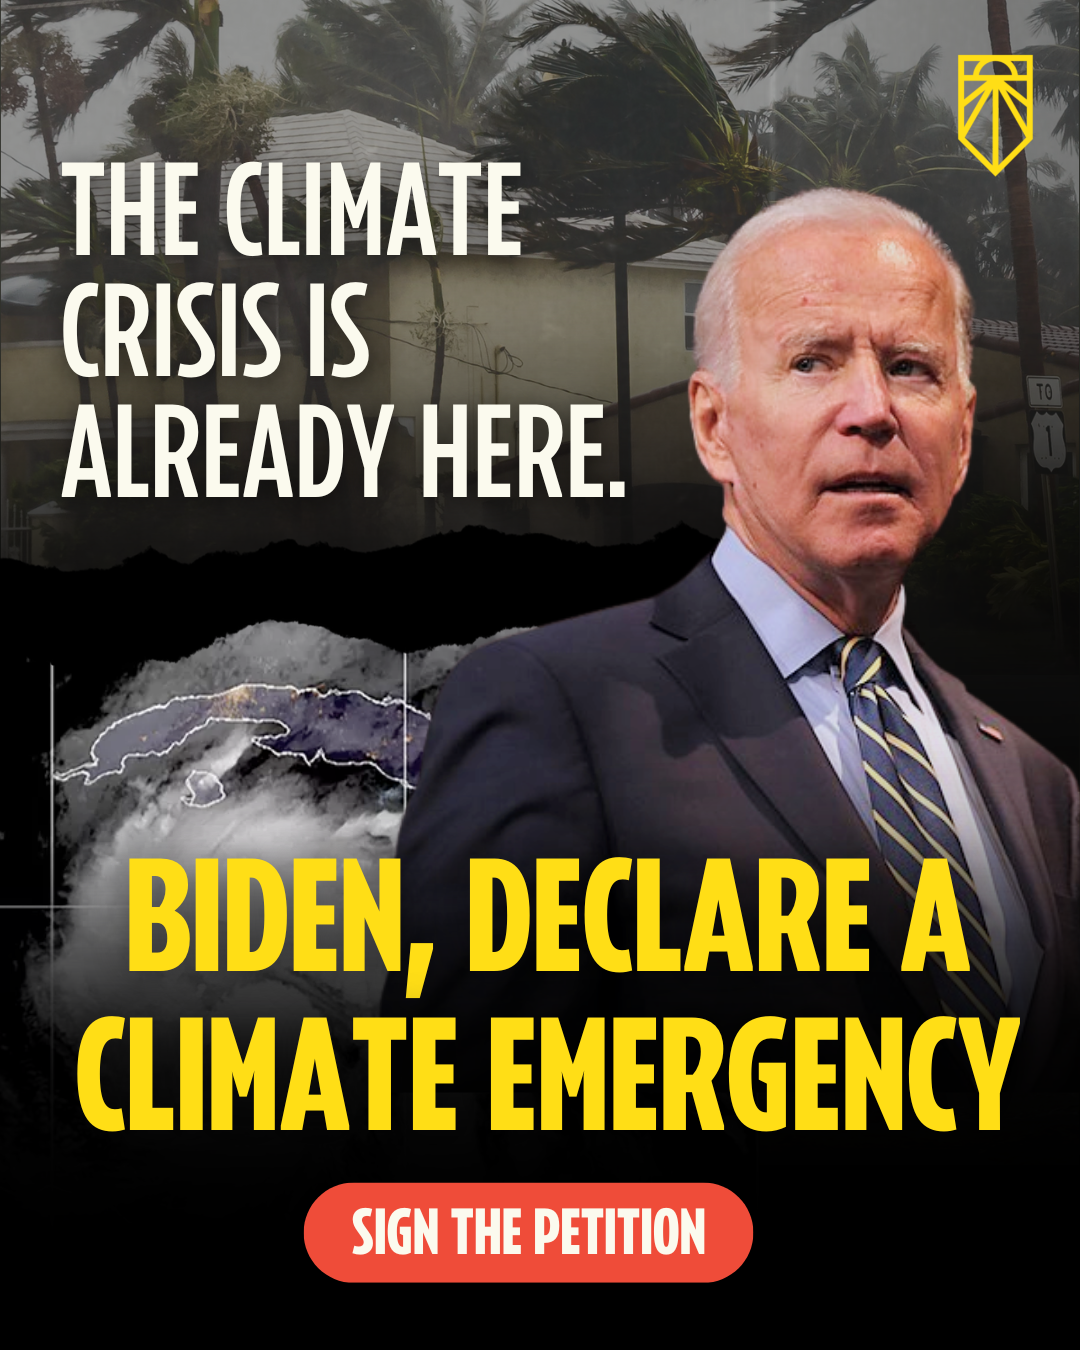 Die Klimakrise ist bereits da. Biden, erklären Sie den Klimanotstand. Die Petition unterschreiben.